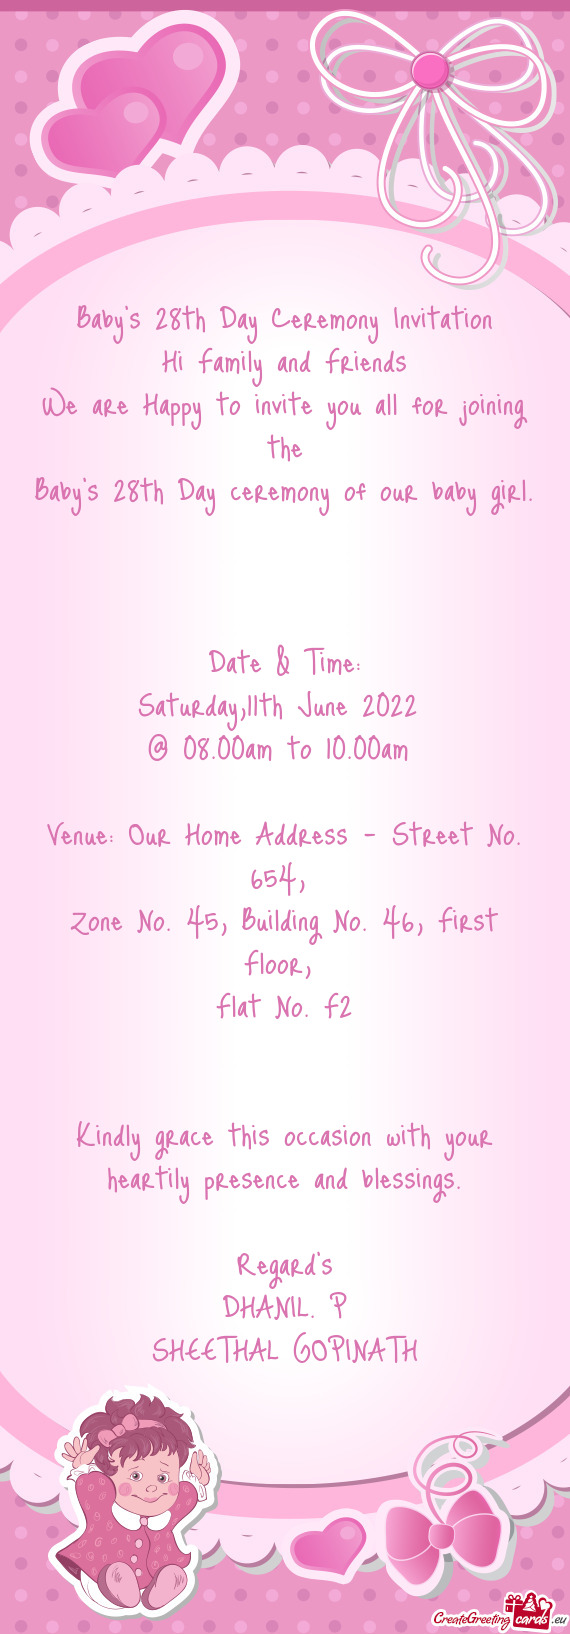 Venue: Our Home Address - Street No. 654